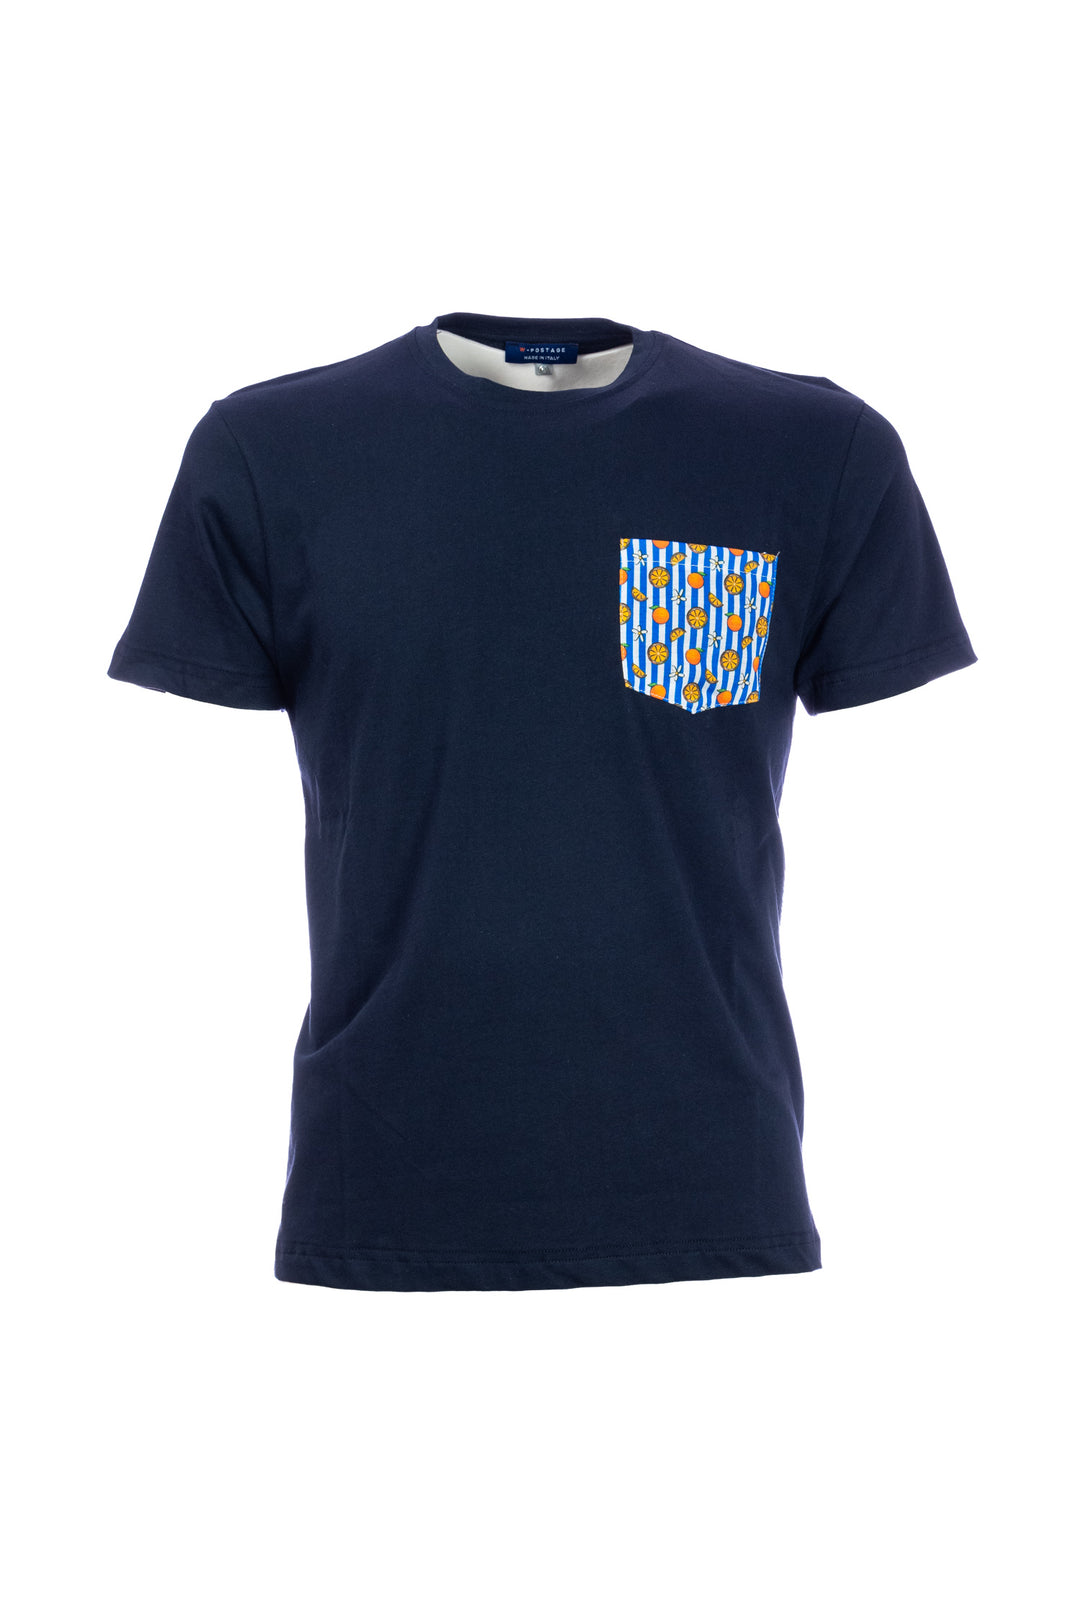 W-POSTAGE T-shirt blu scuro in cotone con taschino stampato con arance - Mancinelli 1954